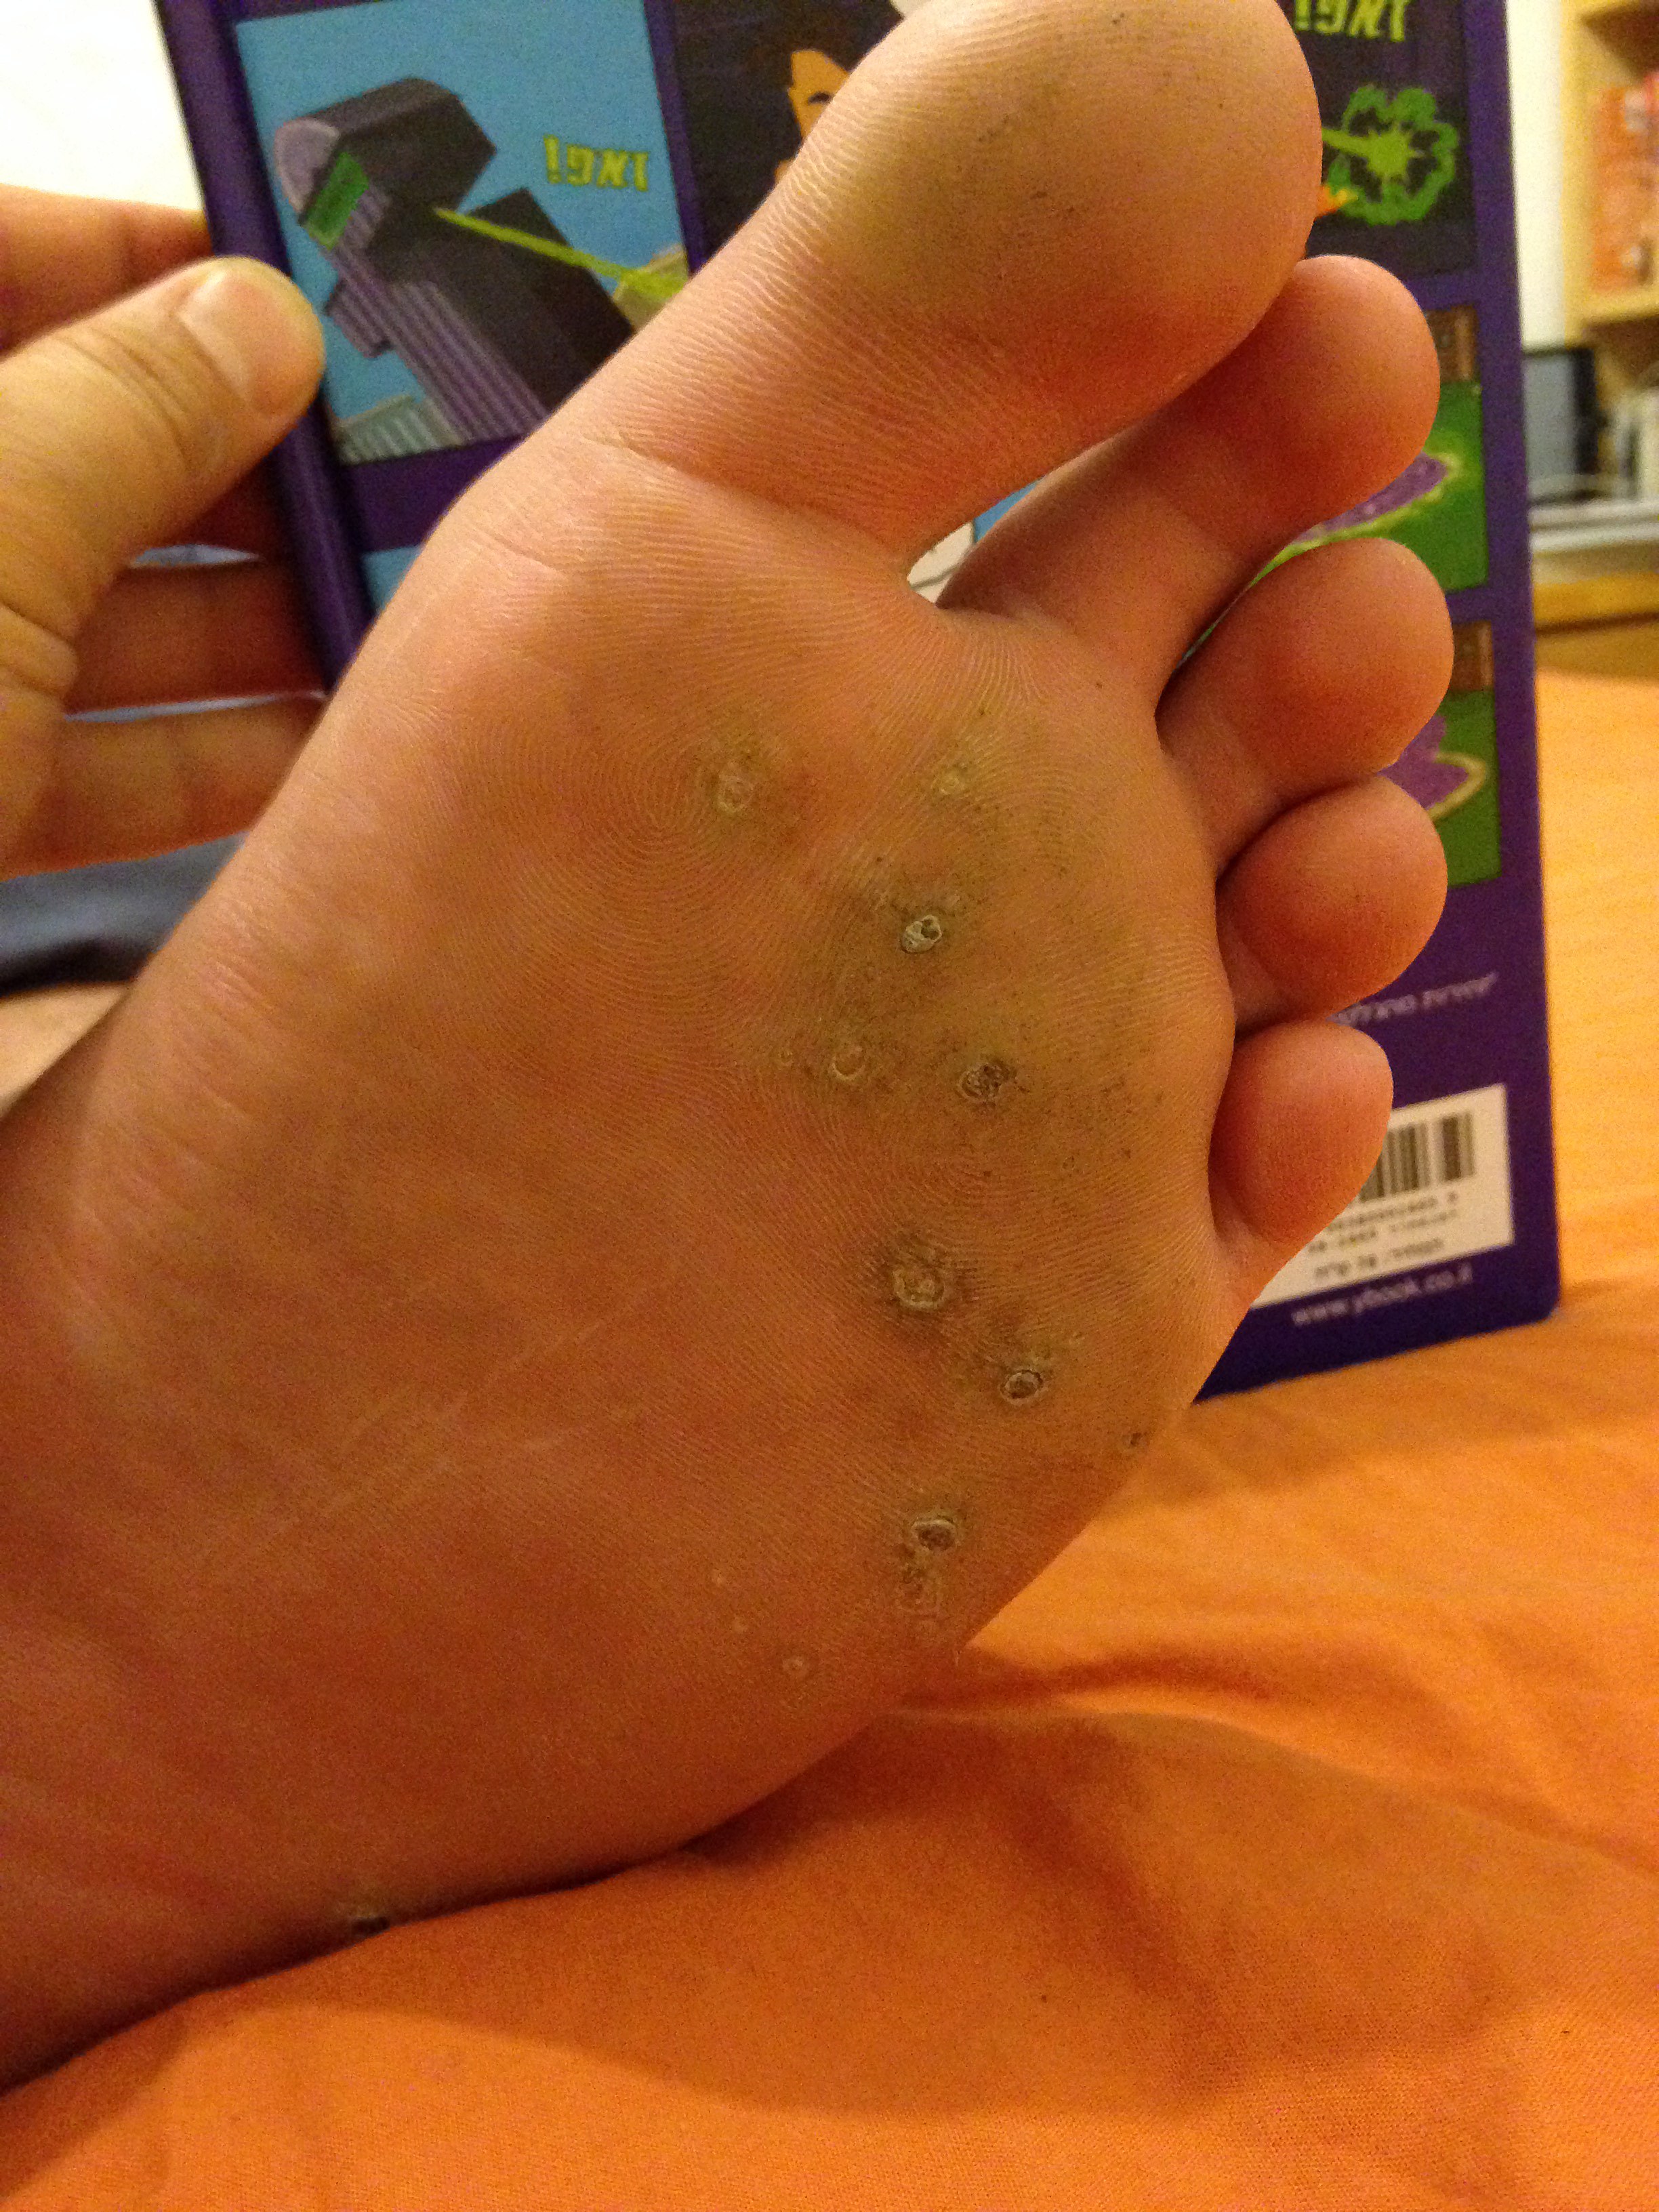 Papilloma foot treatment - apois.ro Papilloma in foot